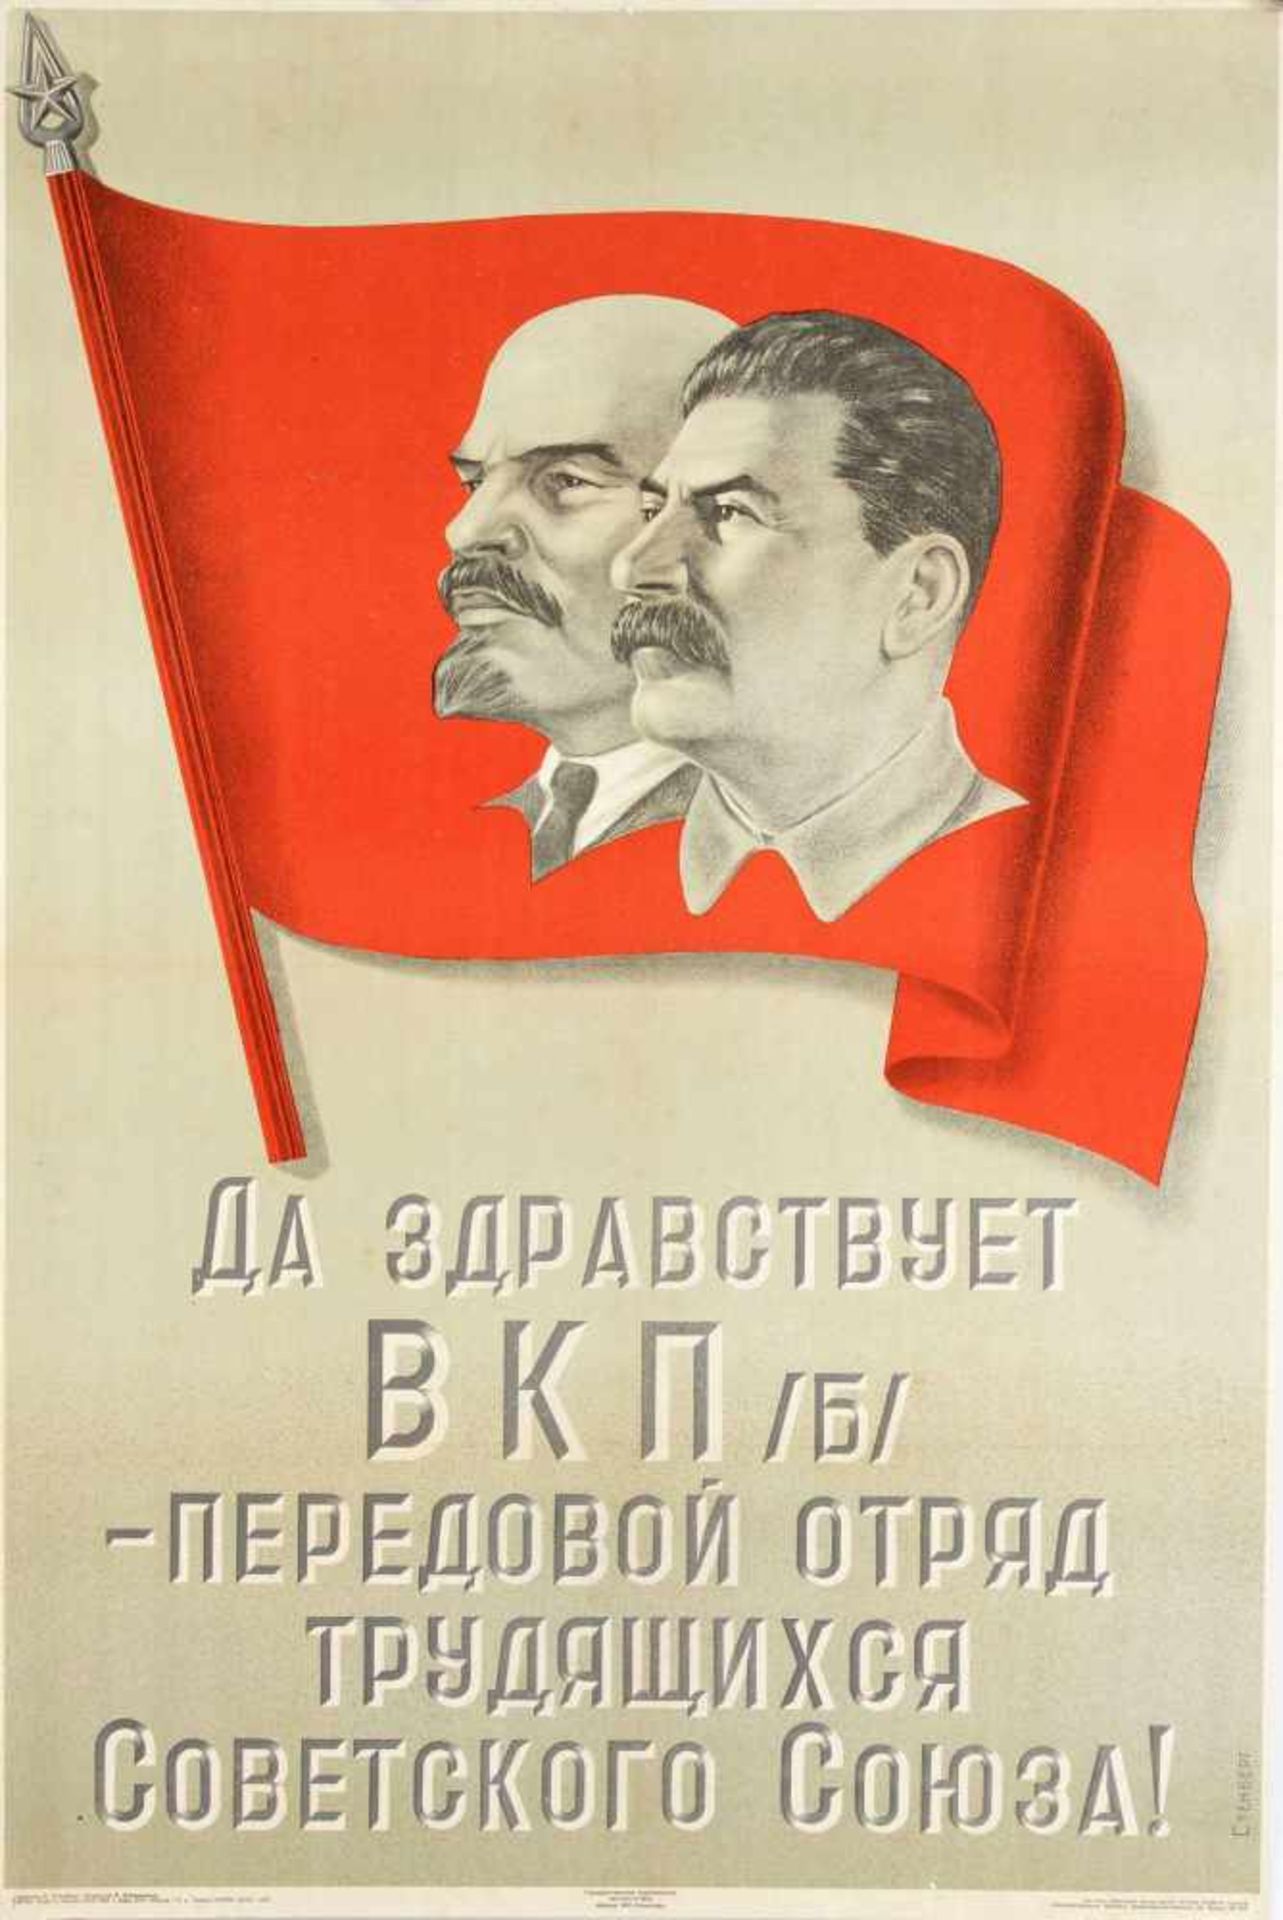 Russisches Propagandaplakat des 2. Weltkrieges, orig. Farblithographie von 1941, mit Leninund Stalin